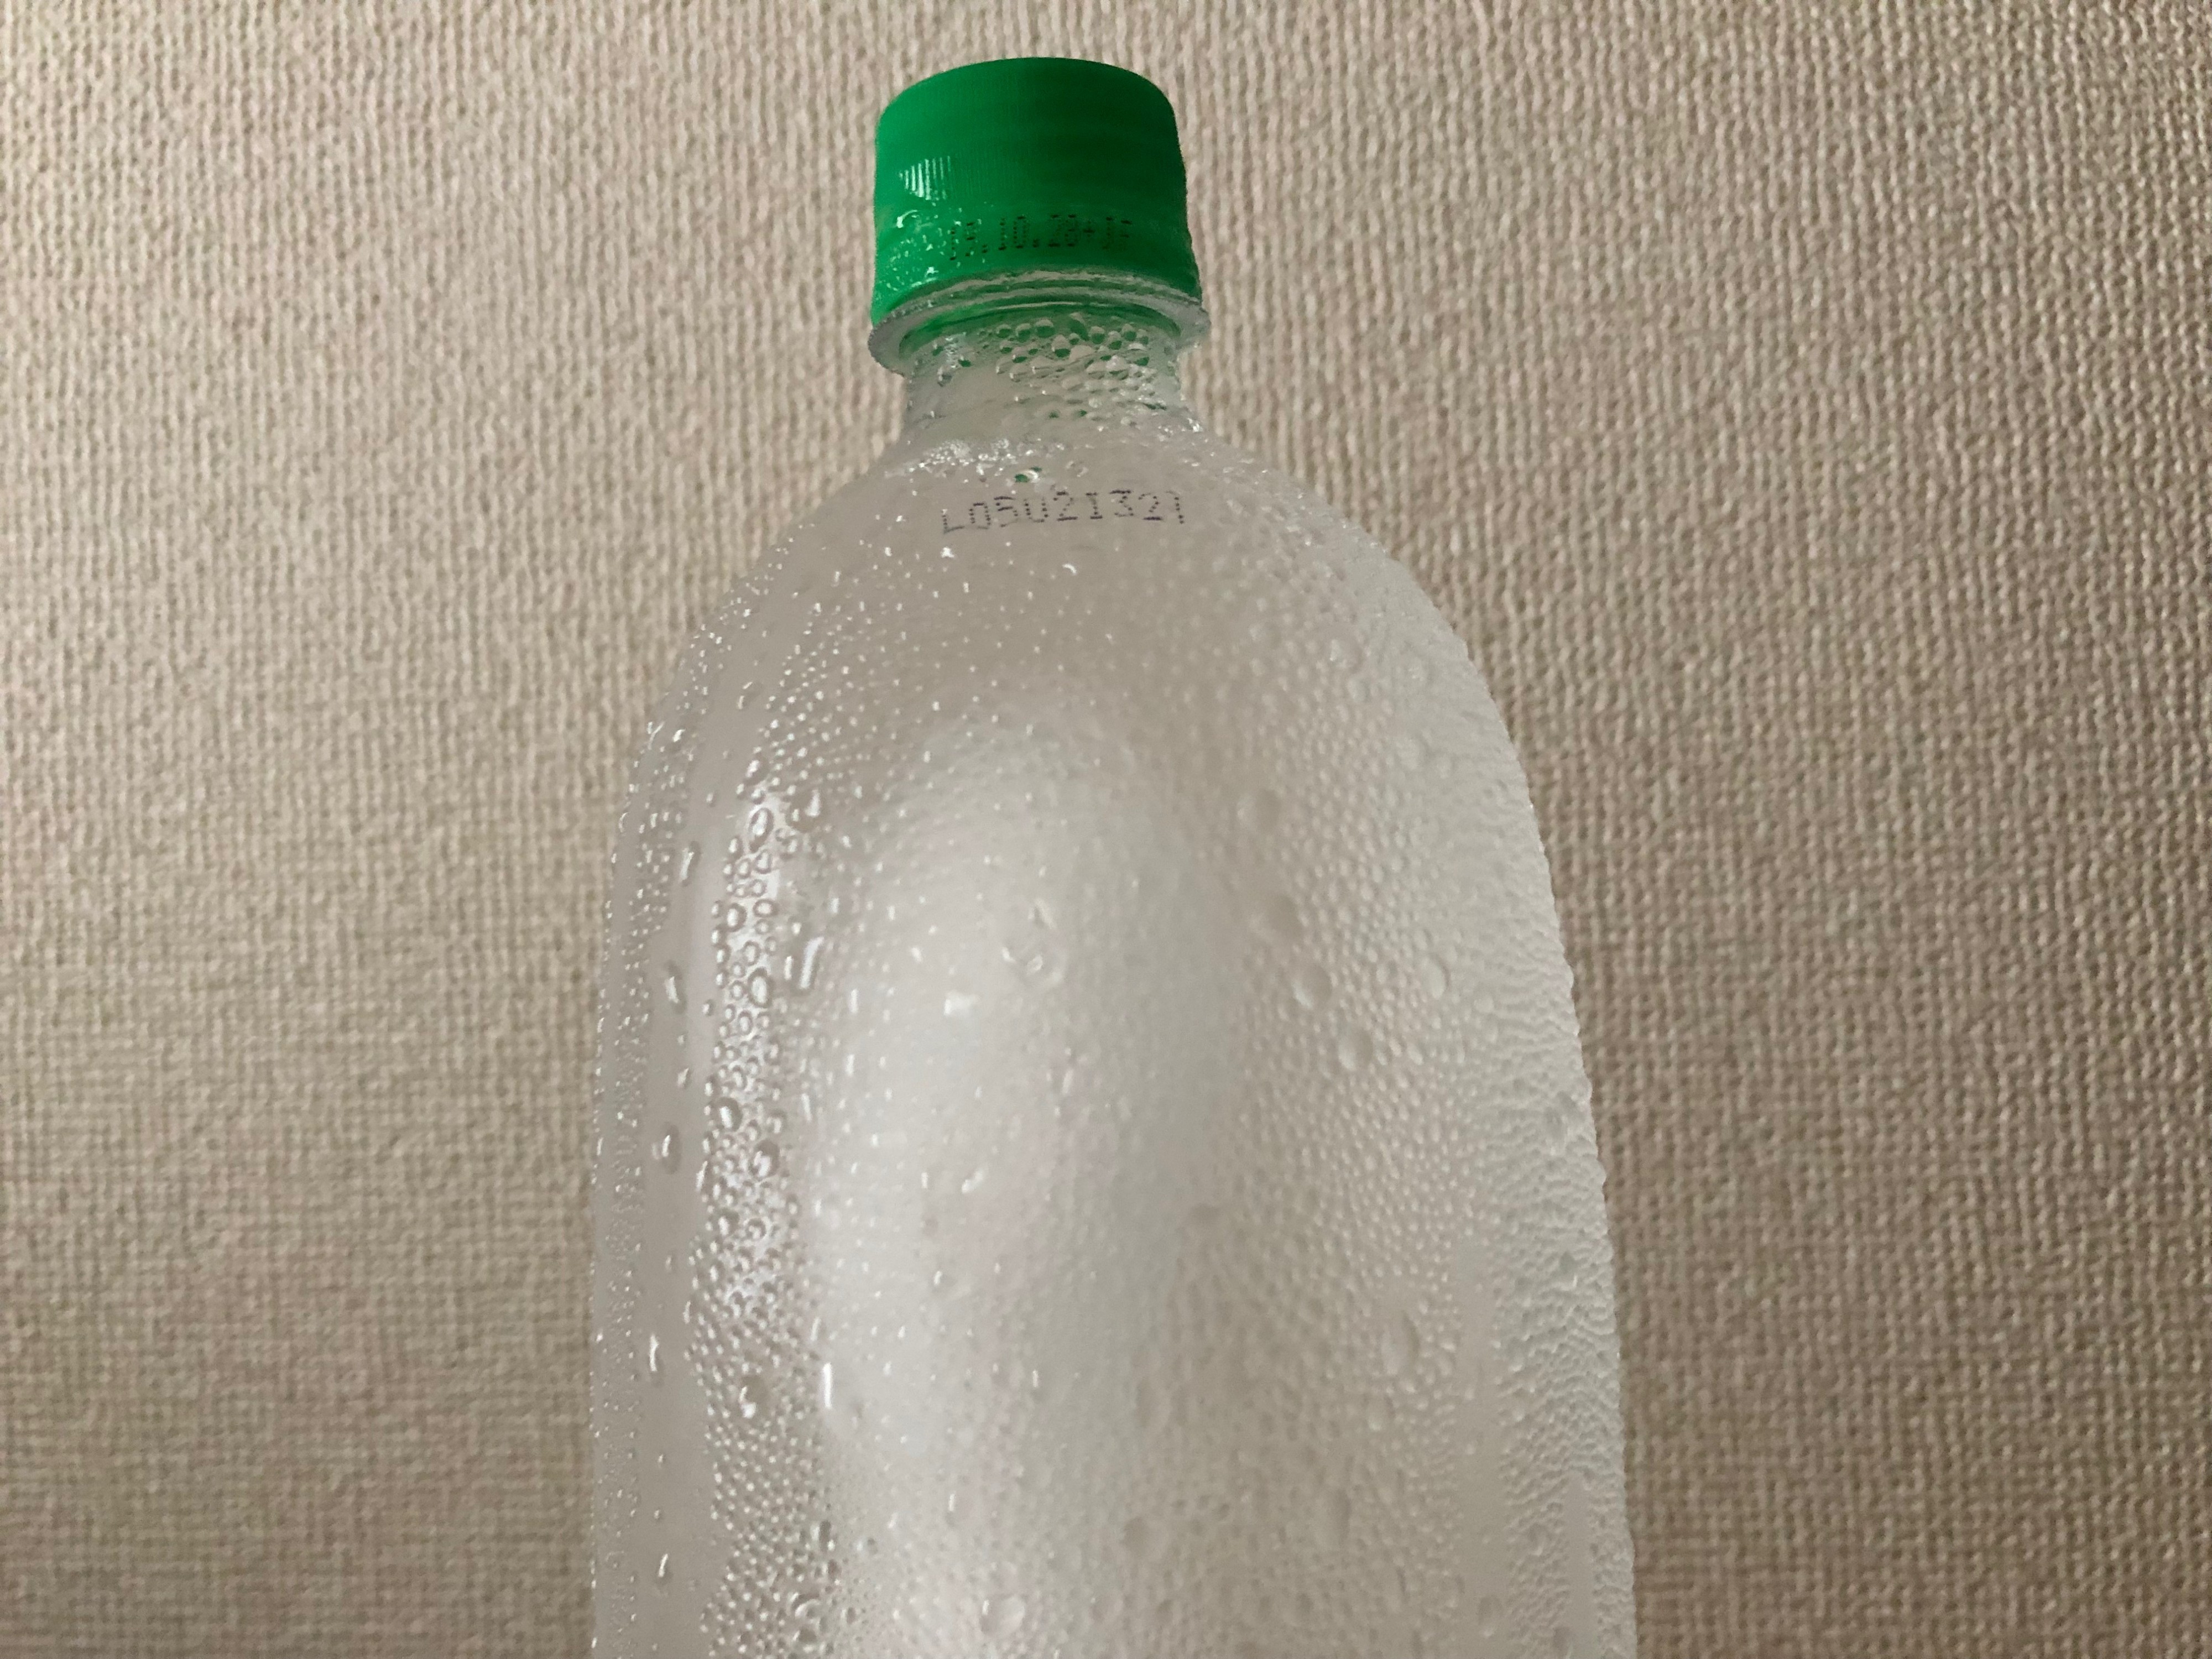 凍ら せ た ペット ボトル 溶ける 時間